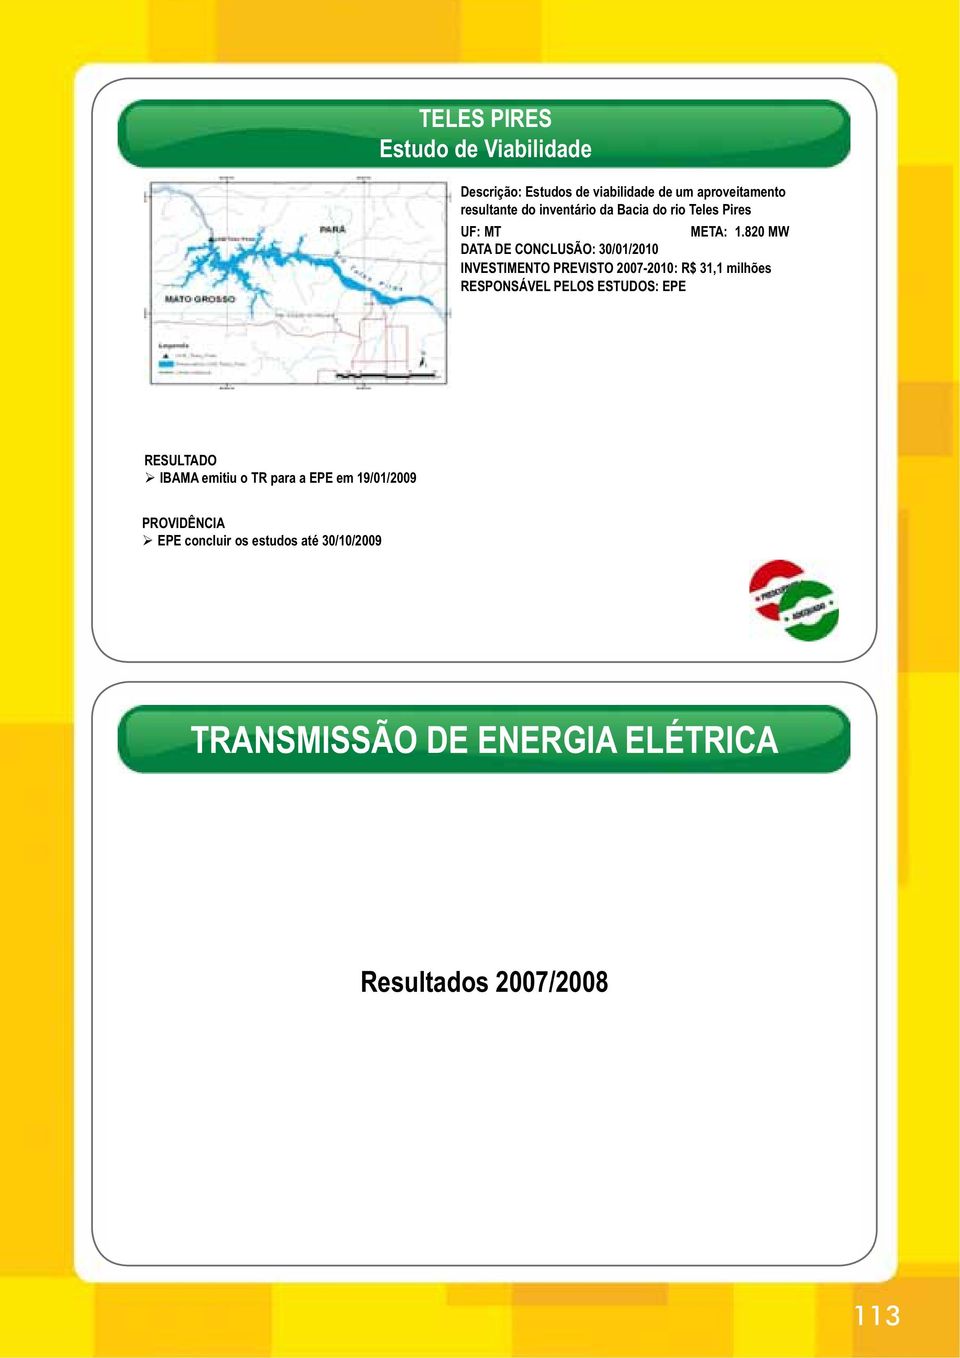 820 MW DATA DE CONCLUSÃO: 30/01/2010 INVESTIMENTO PREVISTO 2007-2010: R$ 31,1 milhões RESPONSÁVEL PELOS